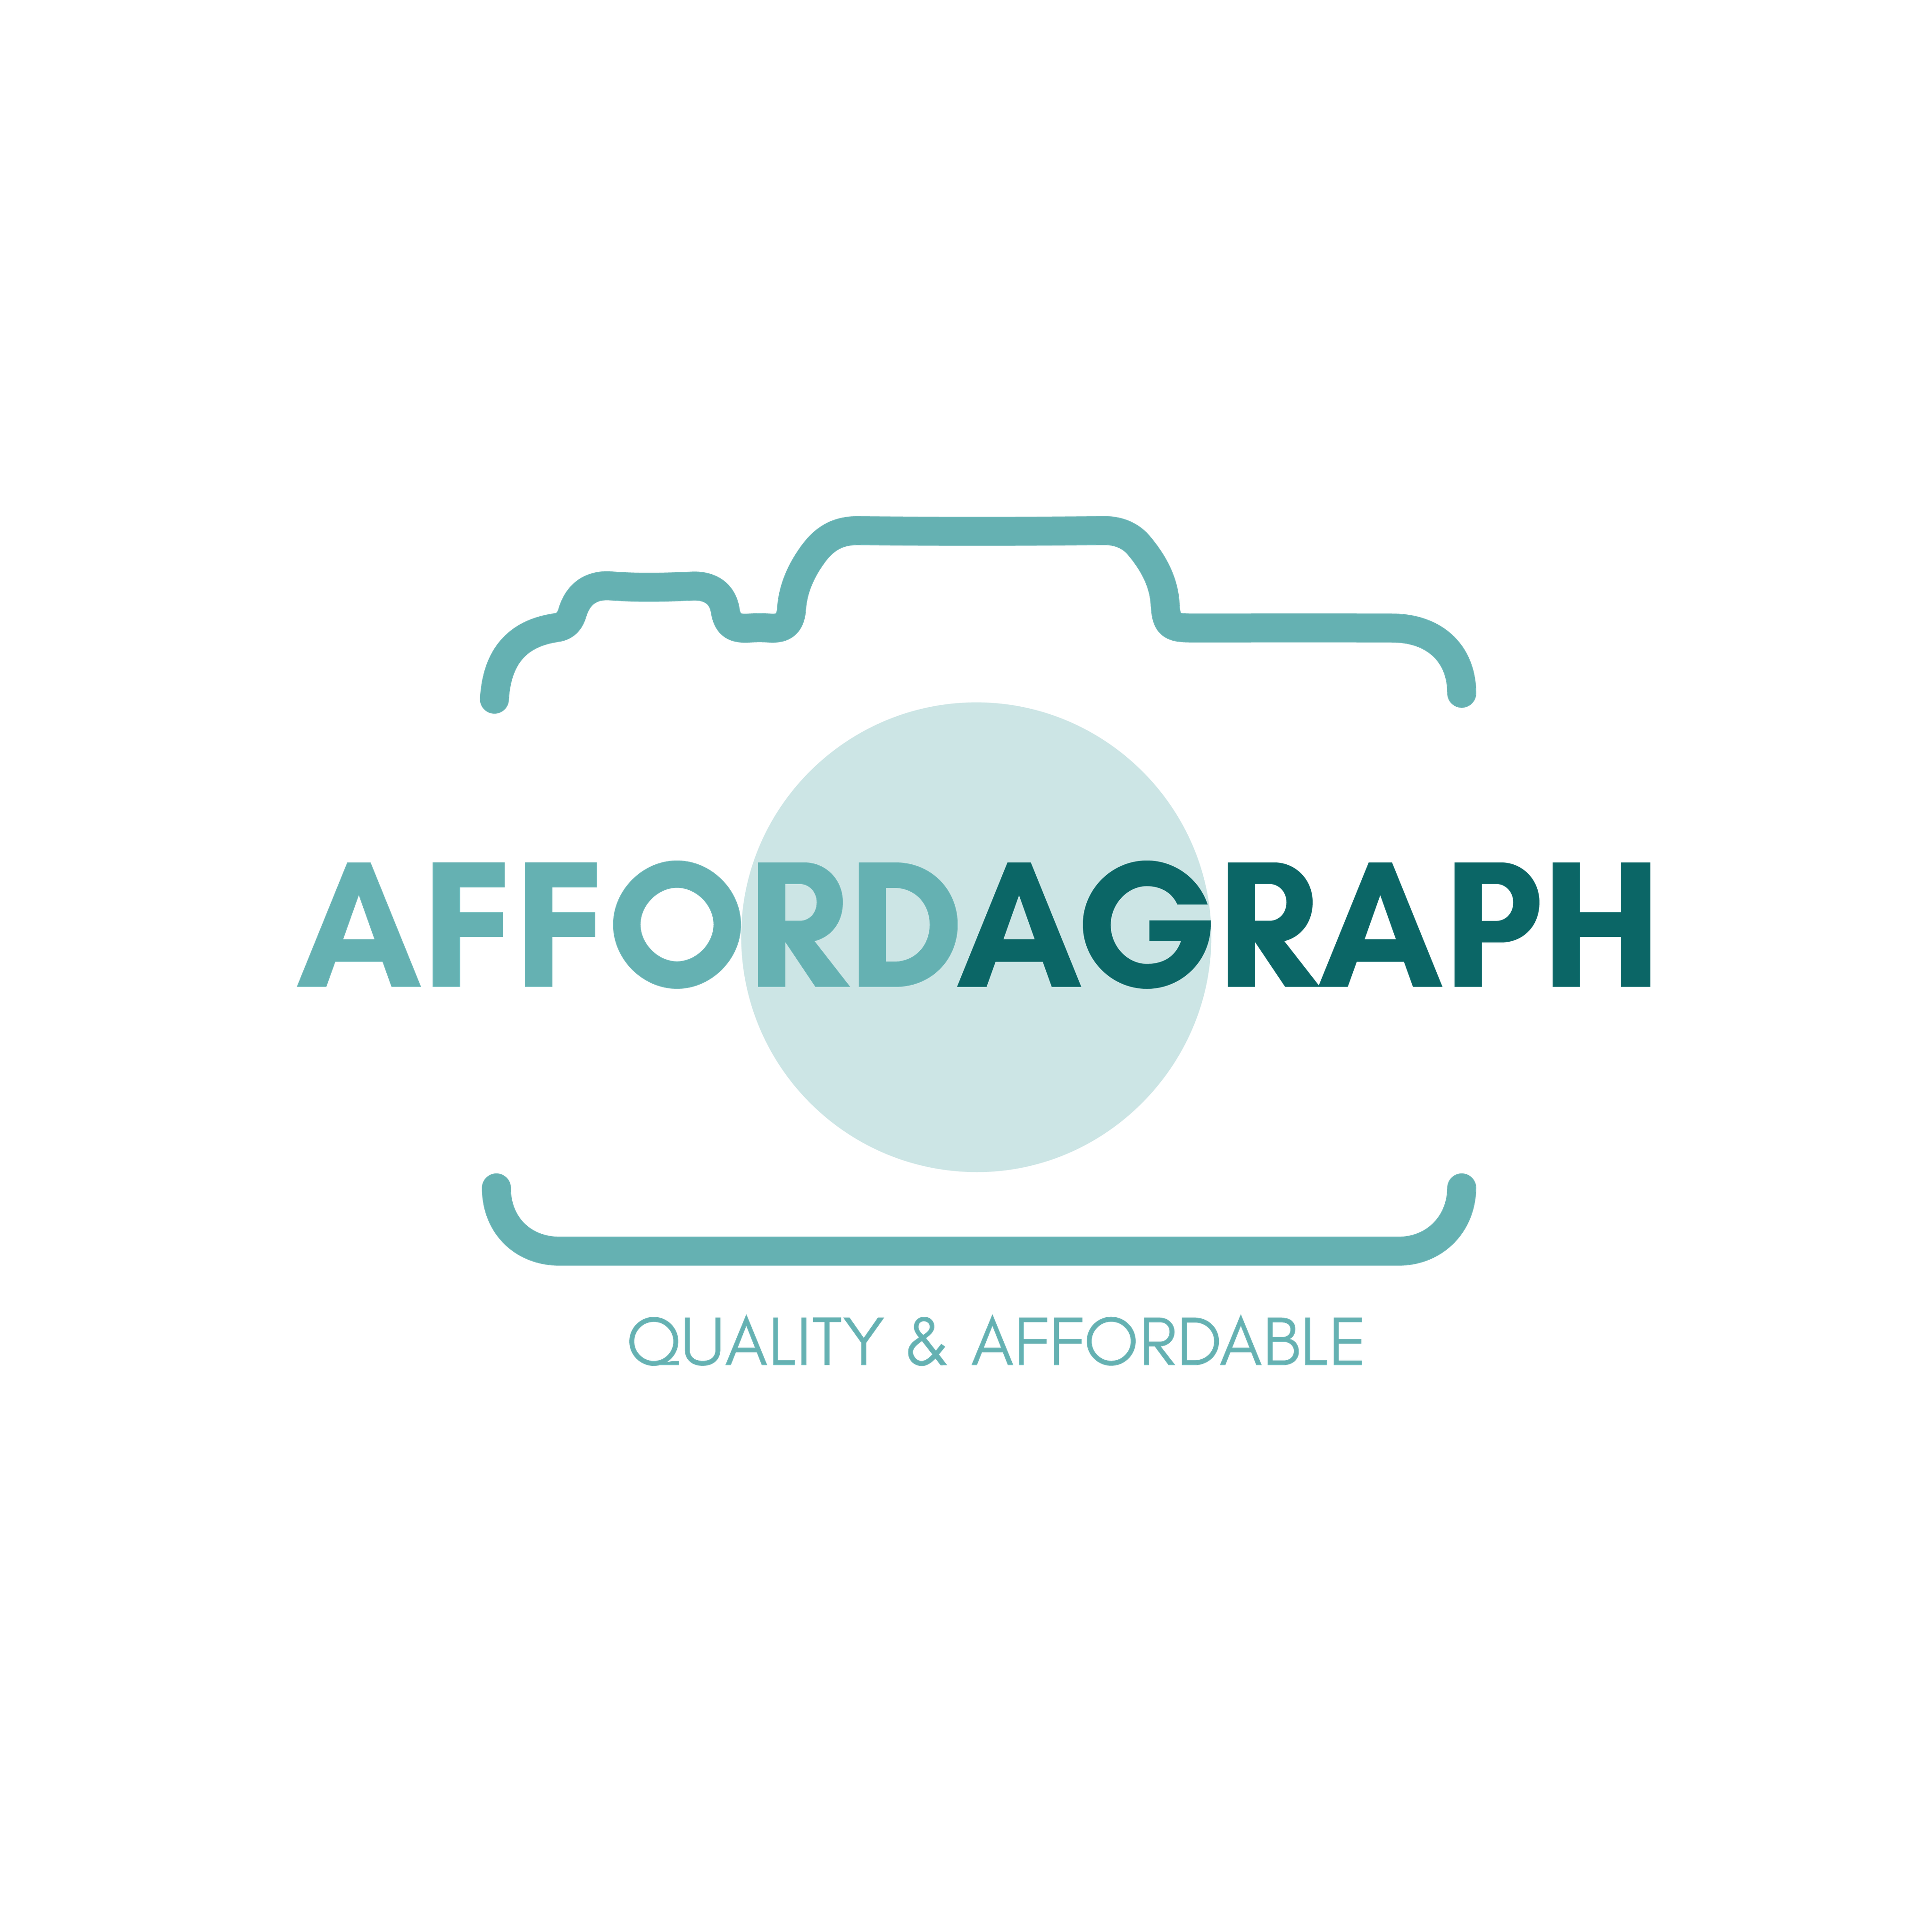 AffordAGraph